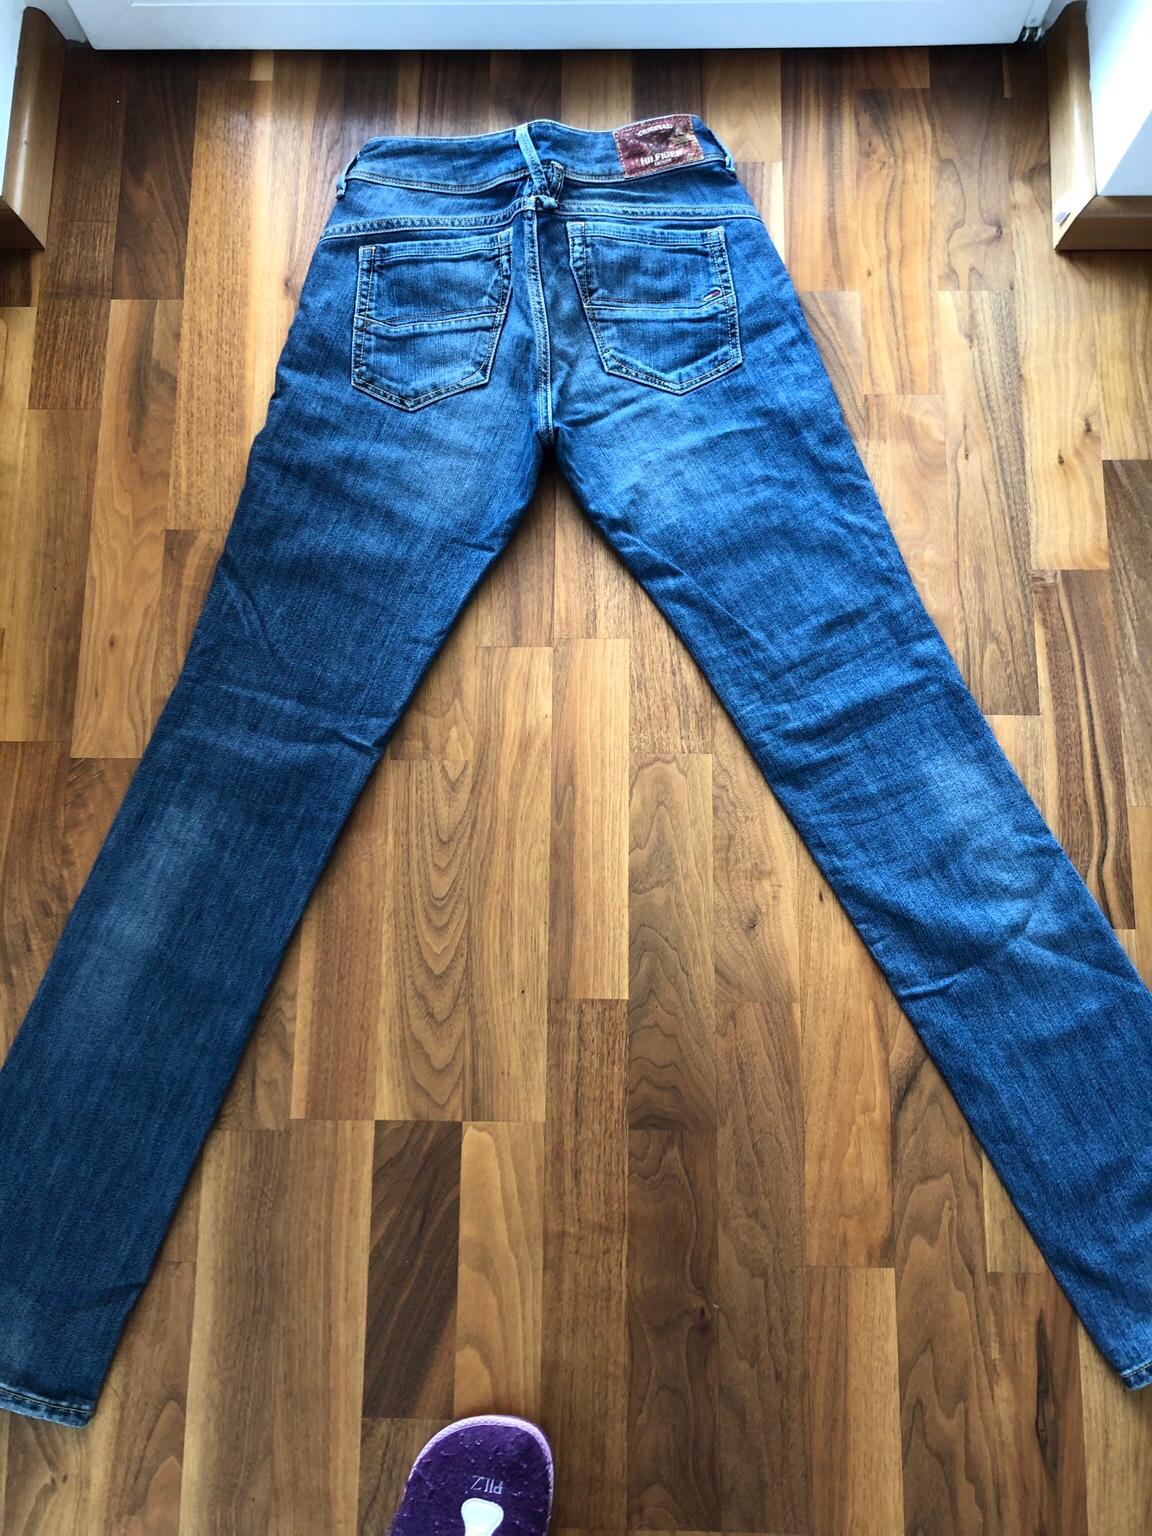 Ideaal Bevestiging Rook Damen Jeans Tommy Hilfiger Denim Victoria F9 in 6710 Marktgemeinde Nenzing  für 35,00 € zum Verkauf | Shpock DE